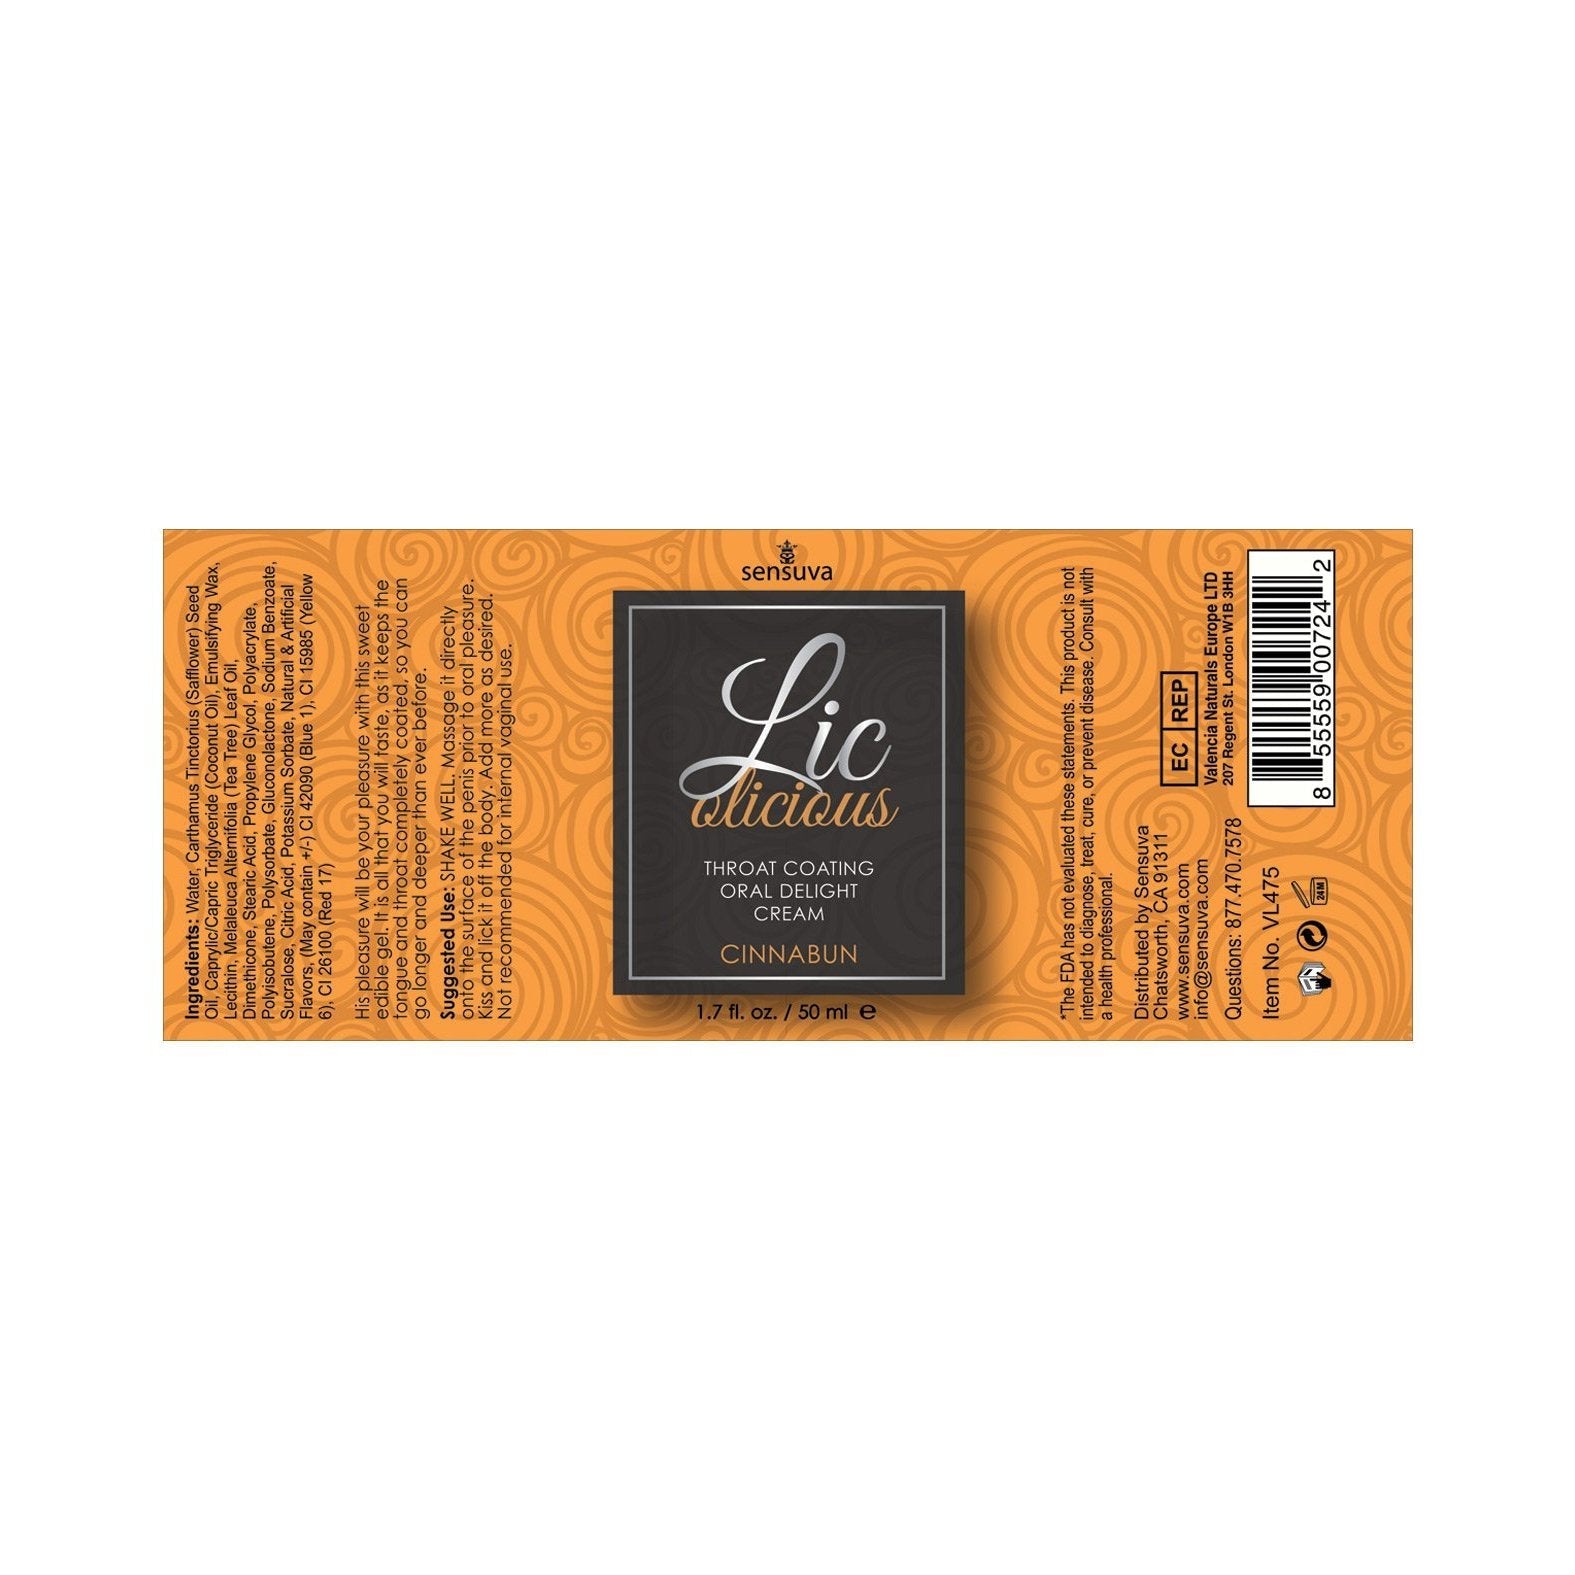 Lic O Licious Oral Delight Cream - 1.7 oz